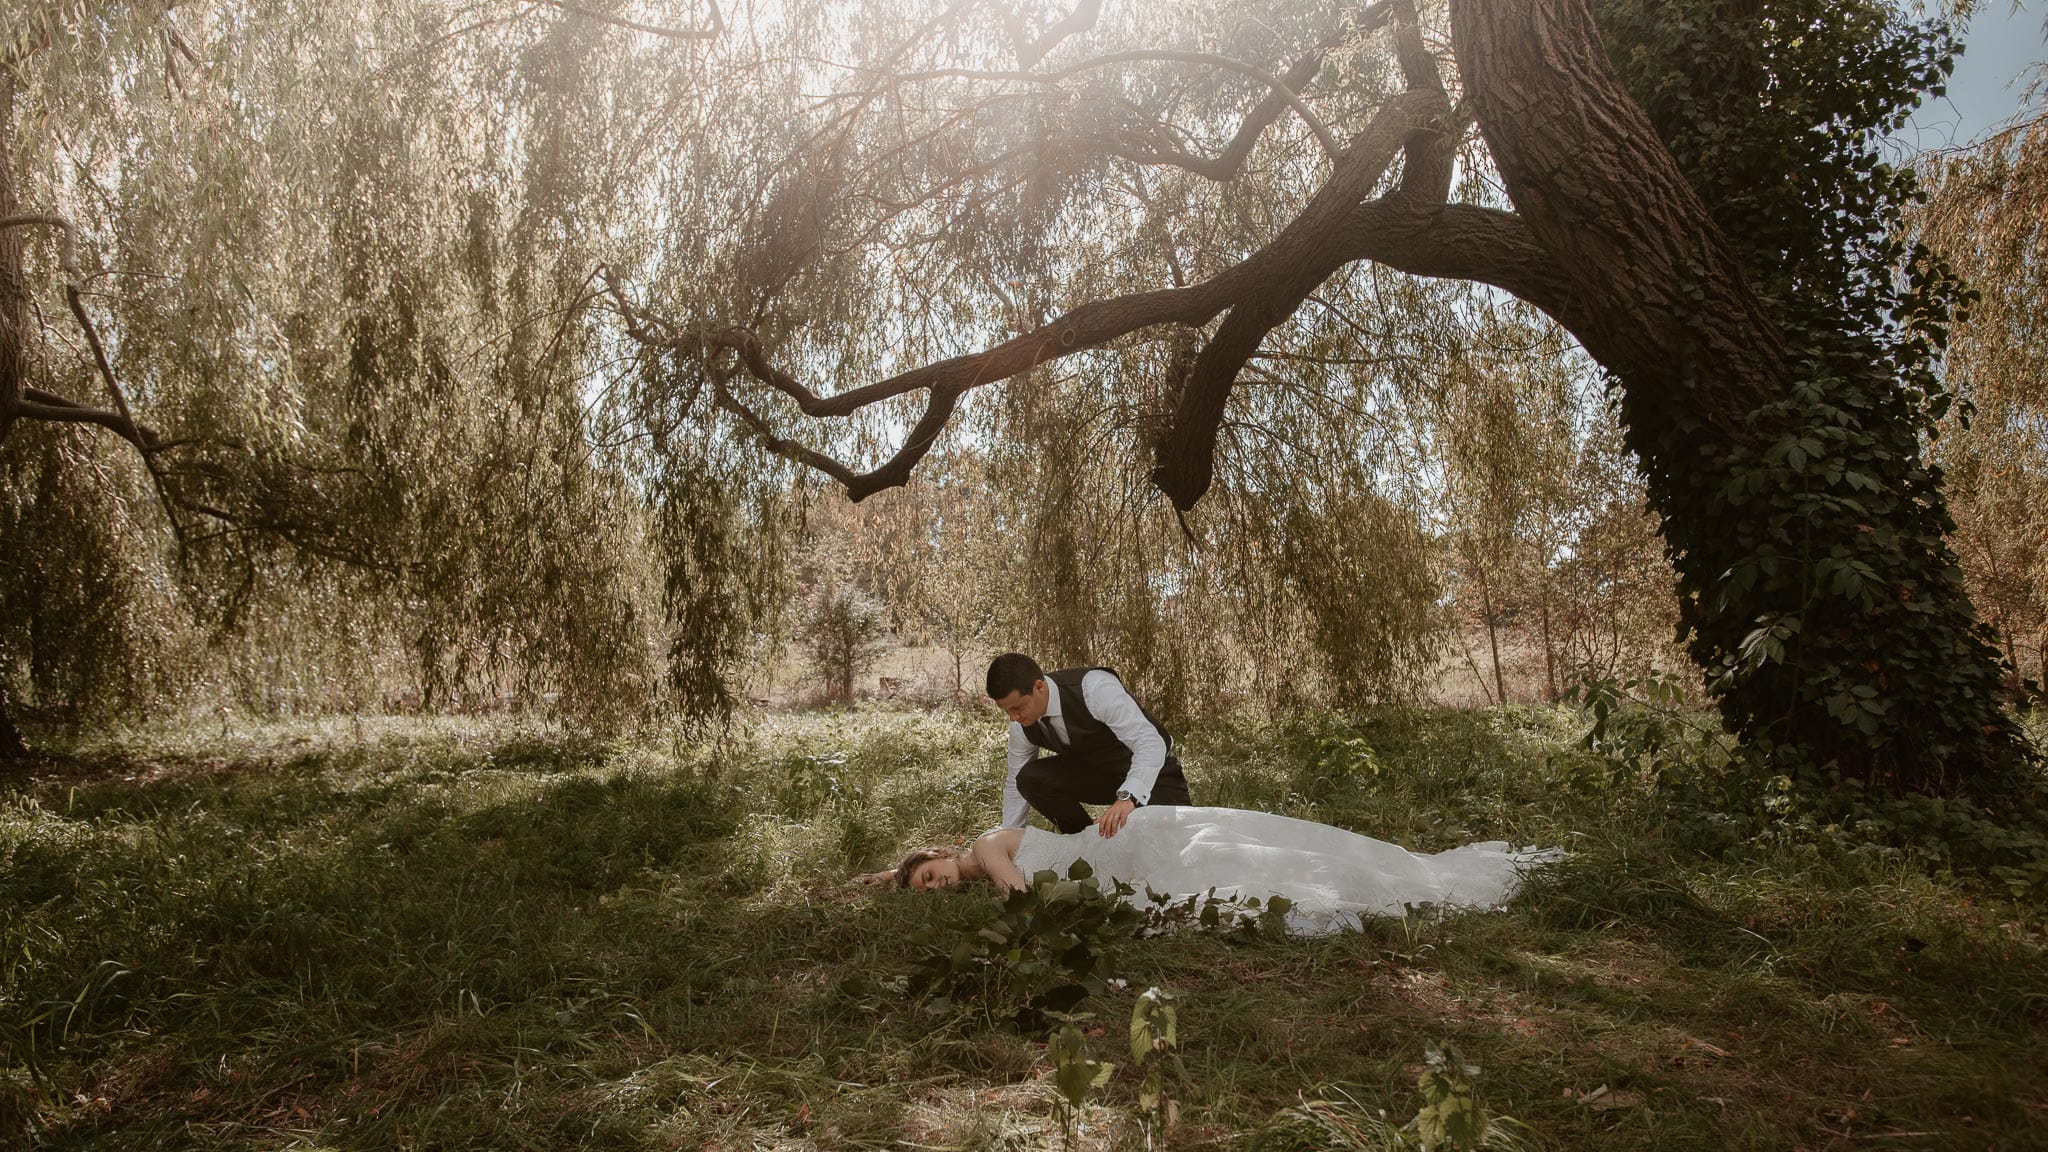 Séance couple après mariage mise en scène poétique et romantique aux alentours de Nantes par Geoffrey Arnoldy photographe